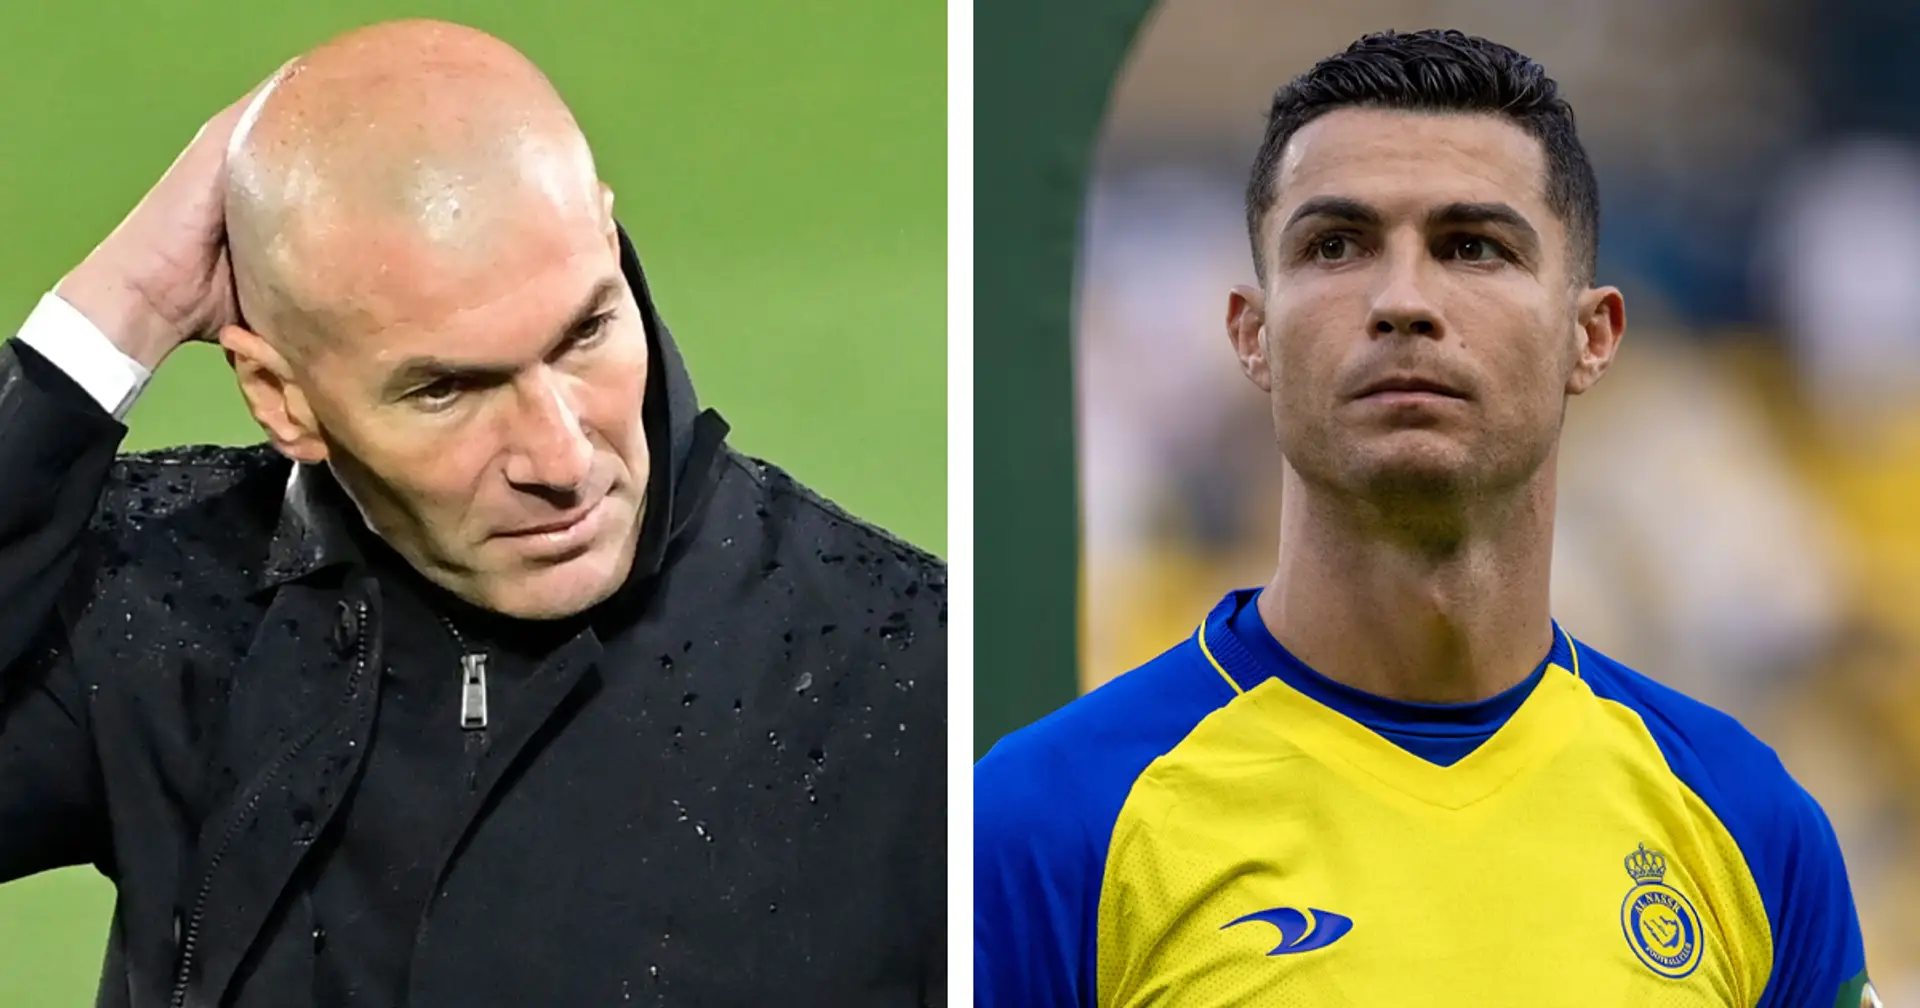 Zidane lehnte das Job-Angebot - er hätte in 2 Jahren 150 Millionen Euro verdienen können